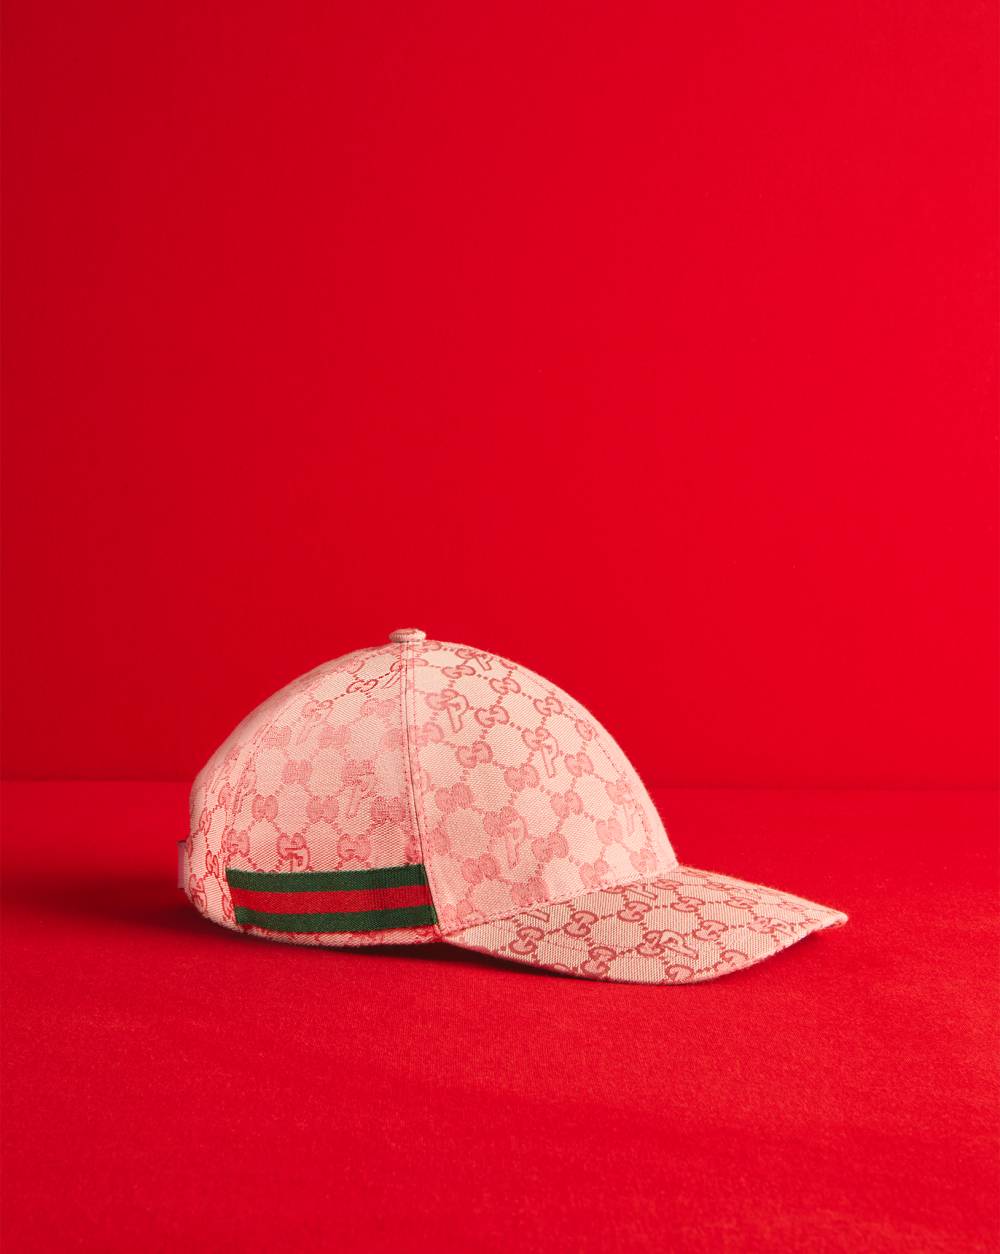 GG-P canvas baseball hat by Palace Gucci